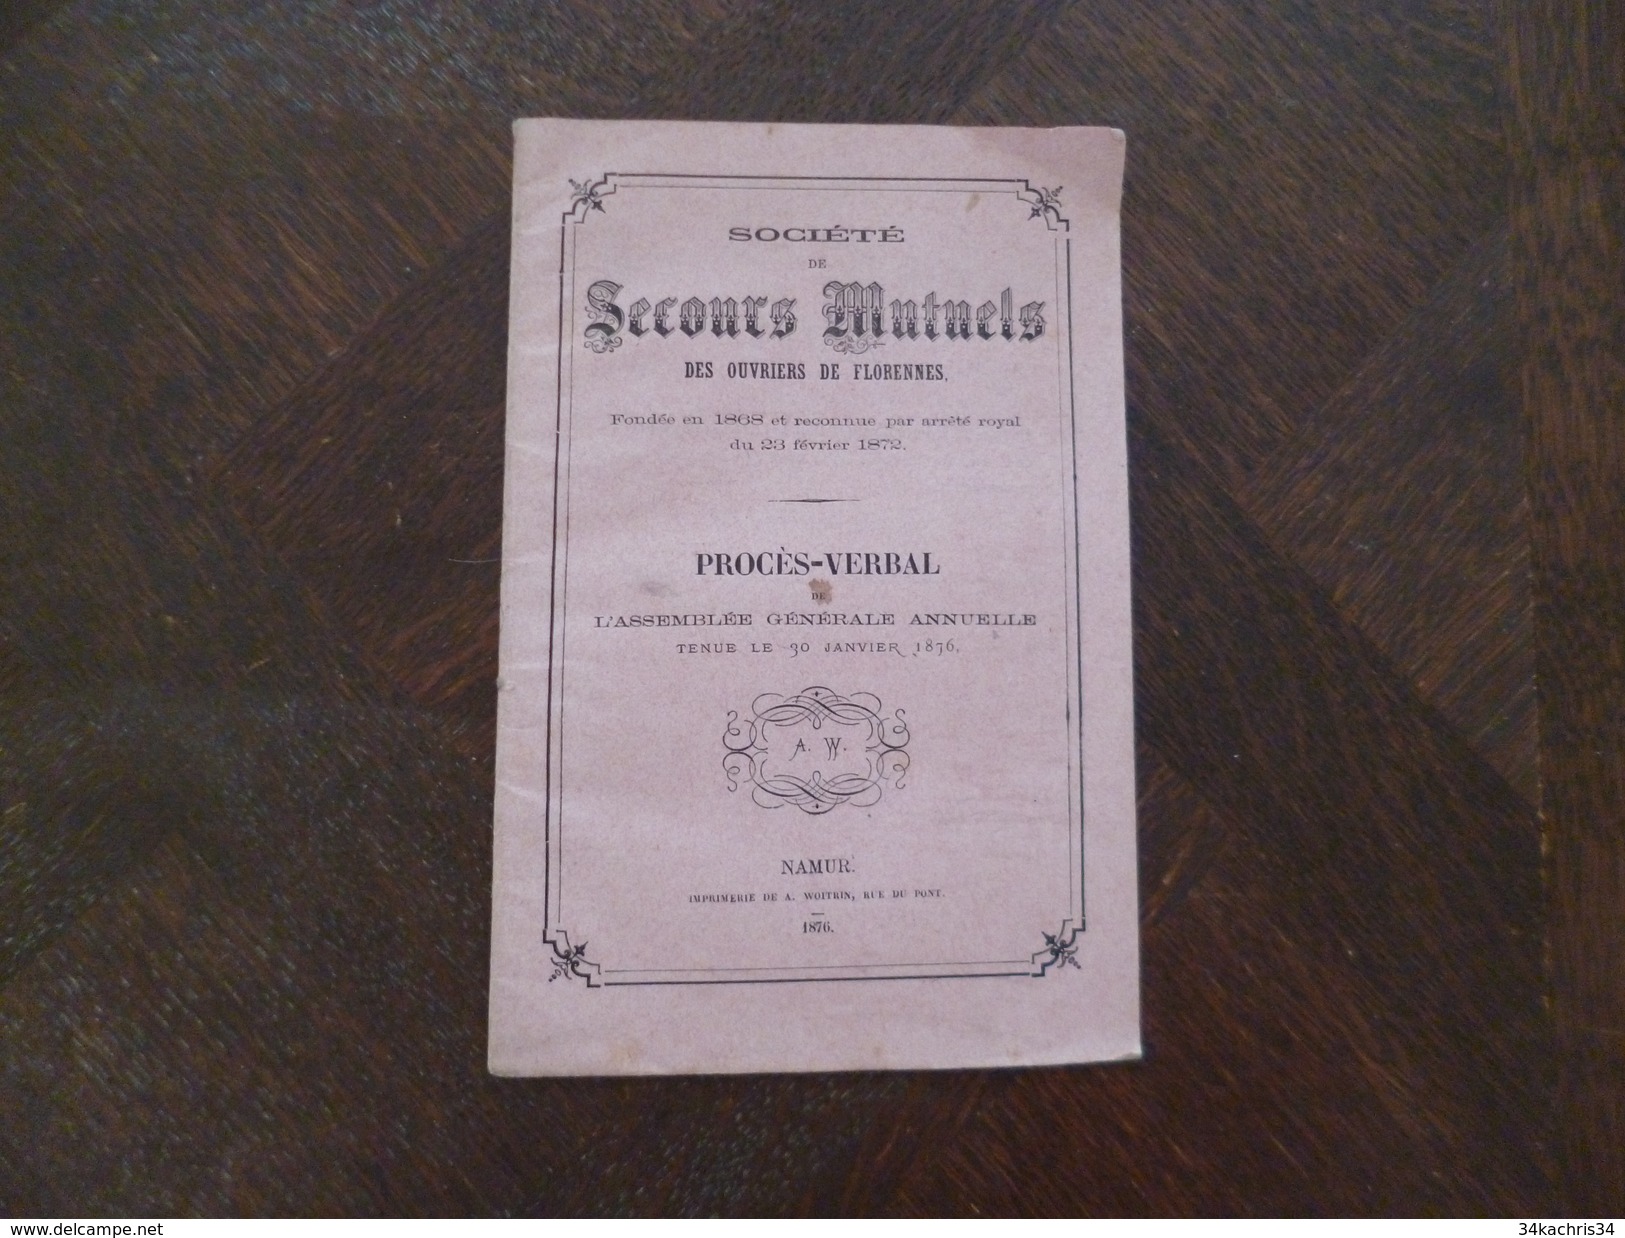 Namur Belgique 1876 Procès Verbal 30/01/1876 Société De Secours Mutuels Des Ouvriers De Florennes 22 P TBE - Manuskripte